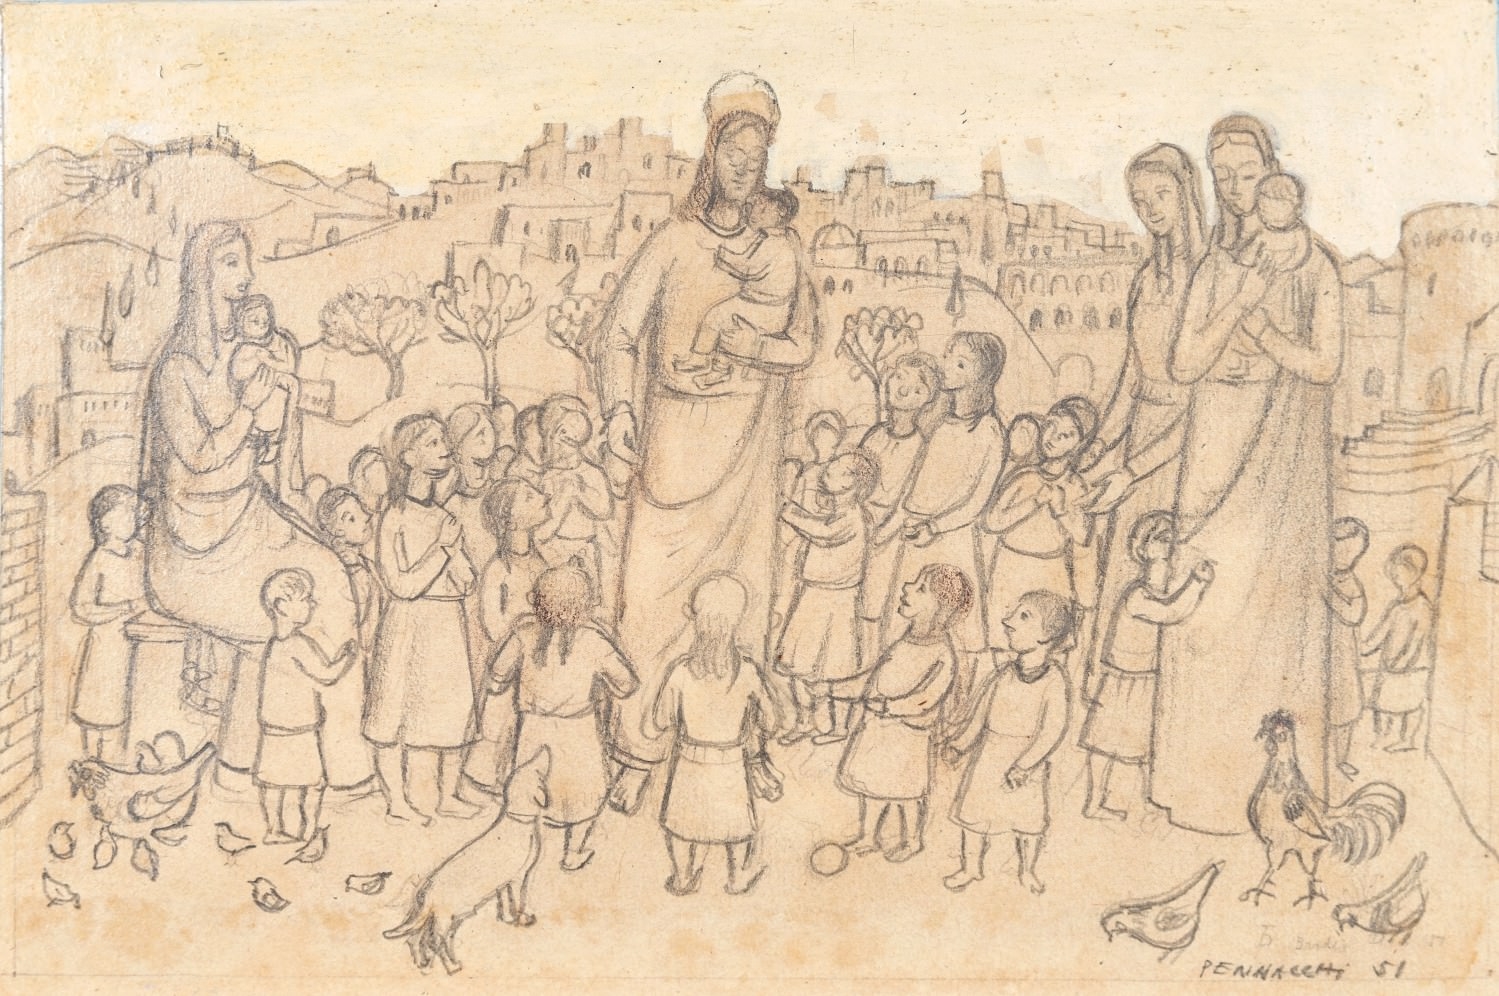 Jesus Entre Crianças by Fulvio Pennacchi, 1951